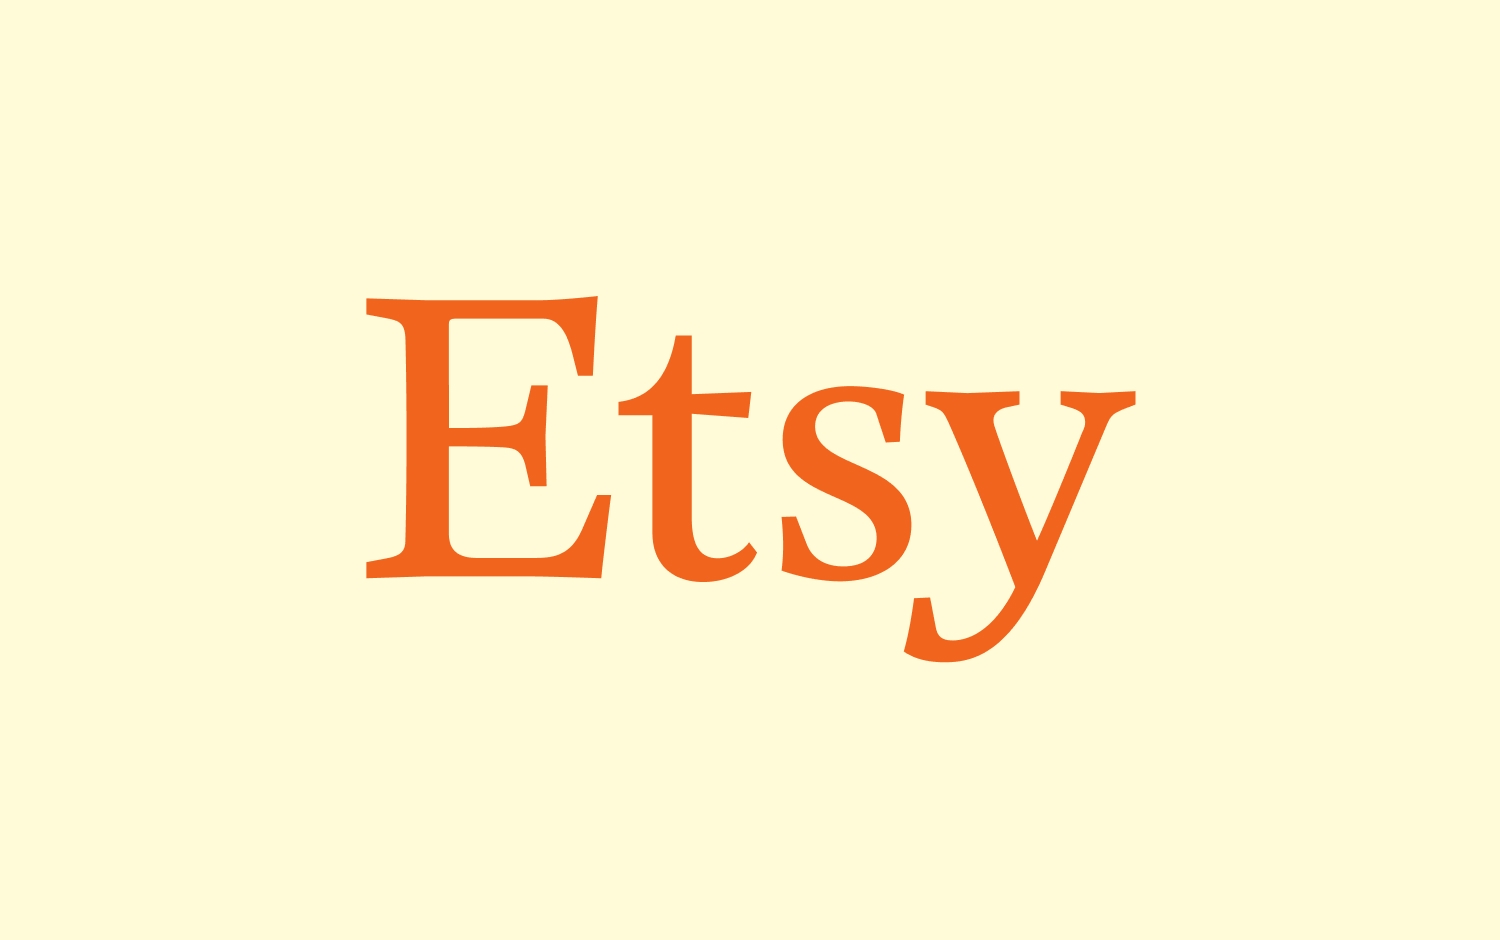 Etsy-logo met oranje letters op een crèmekleurige achtergrond